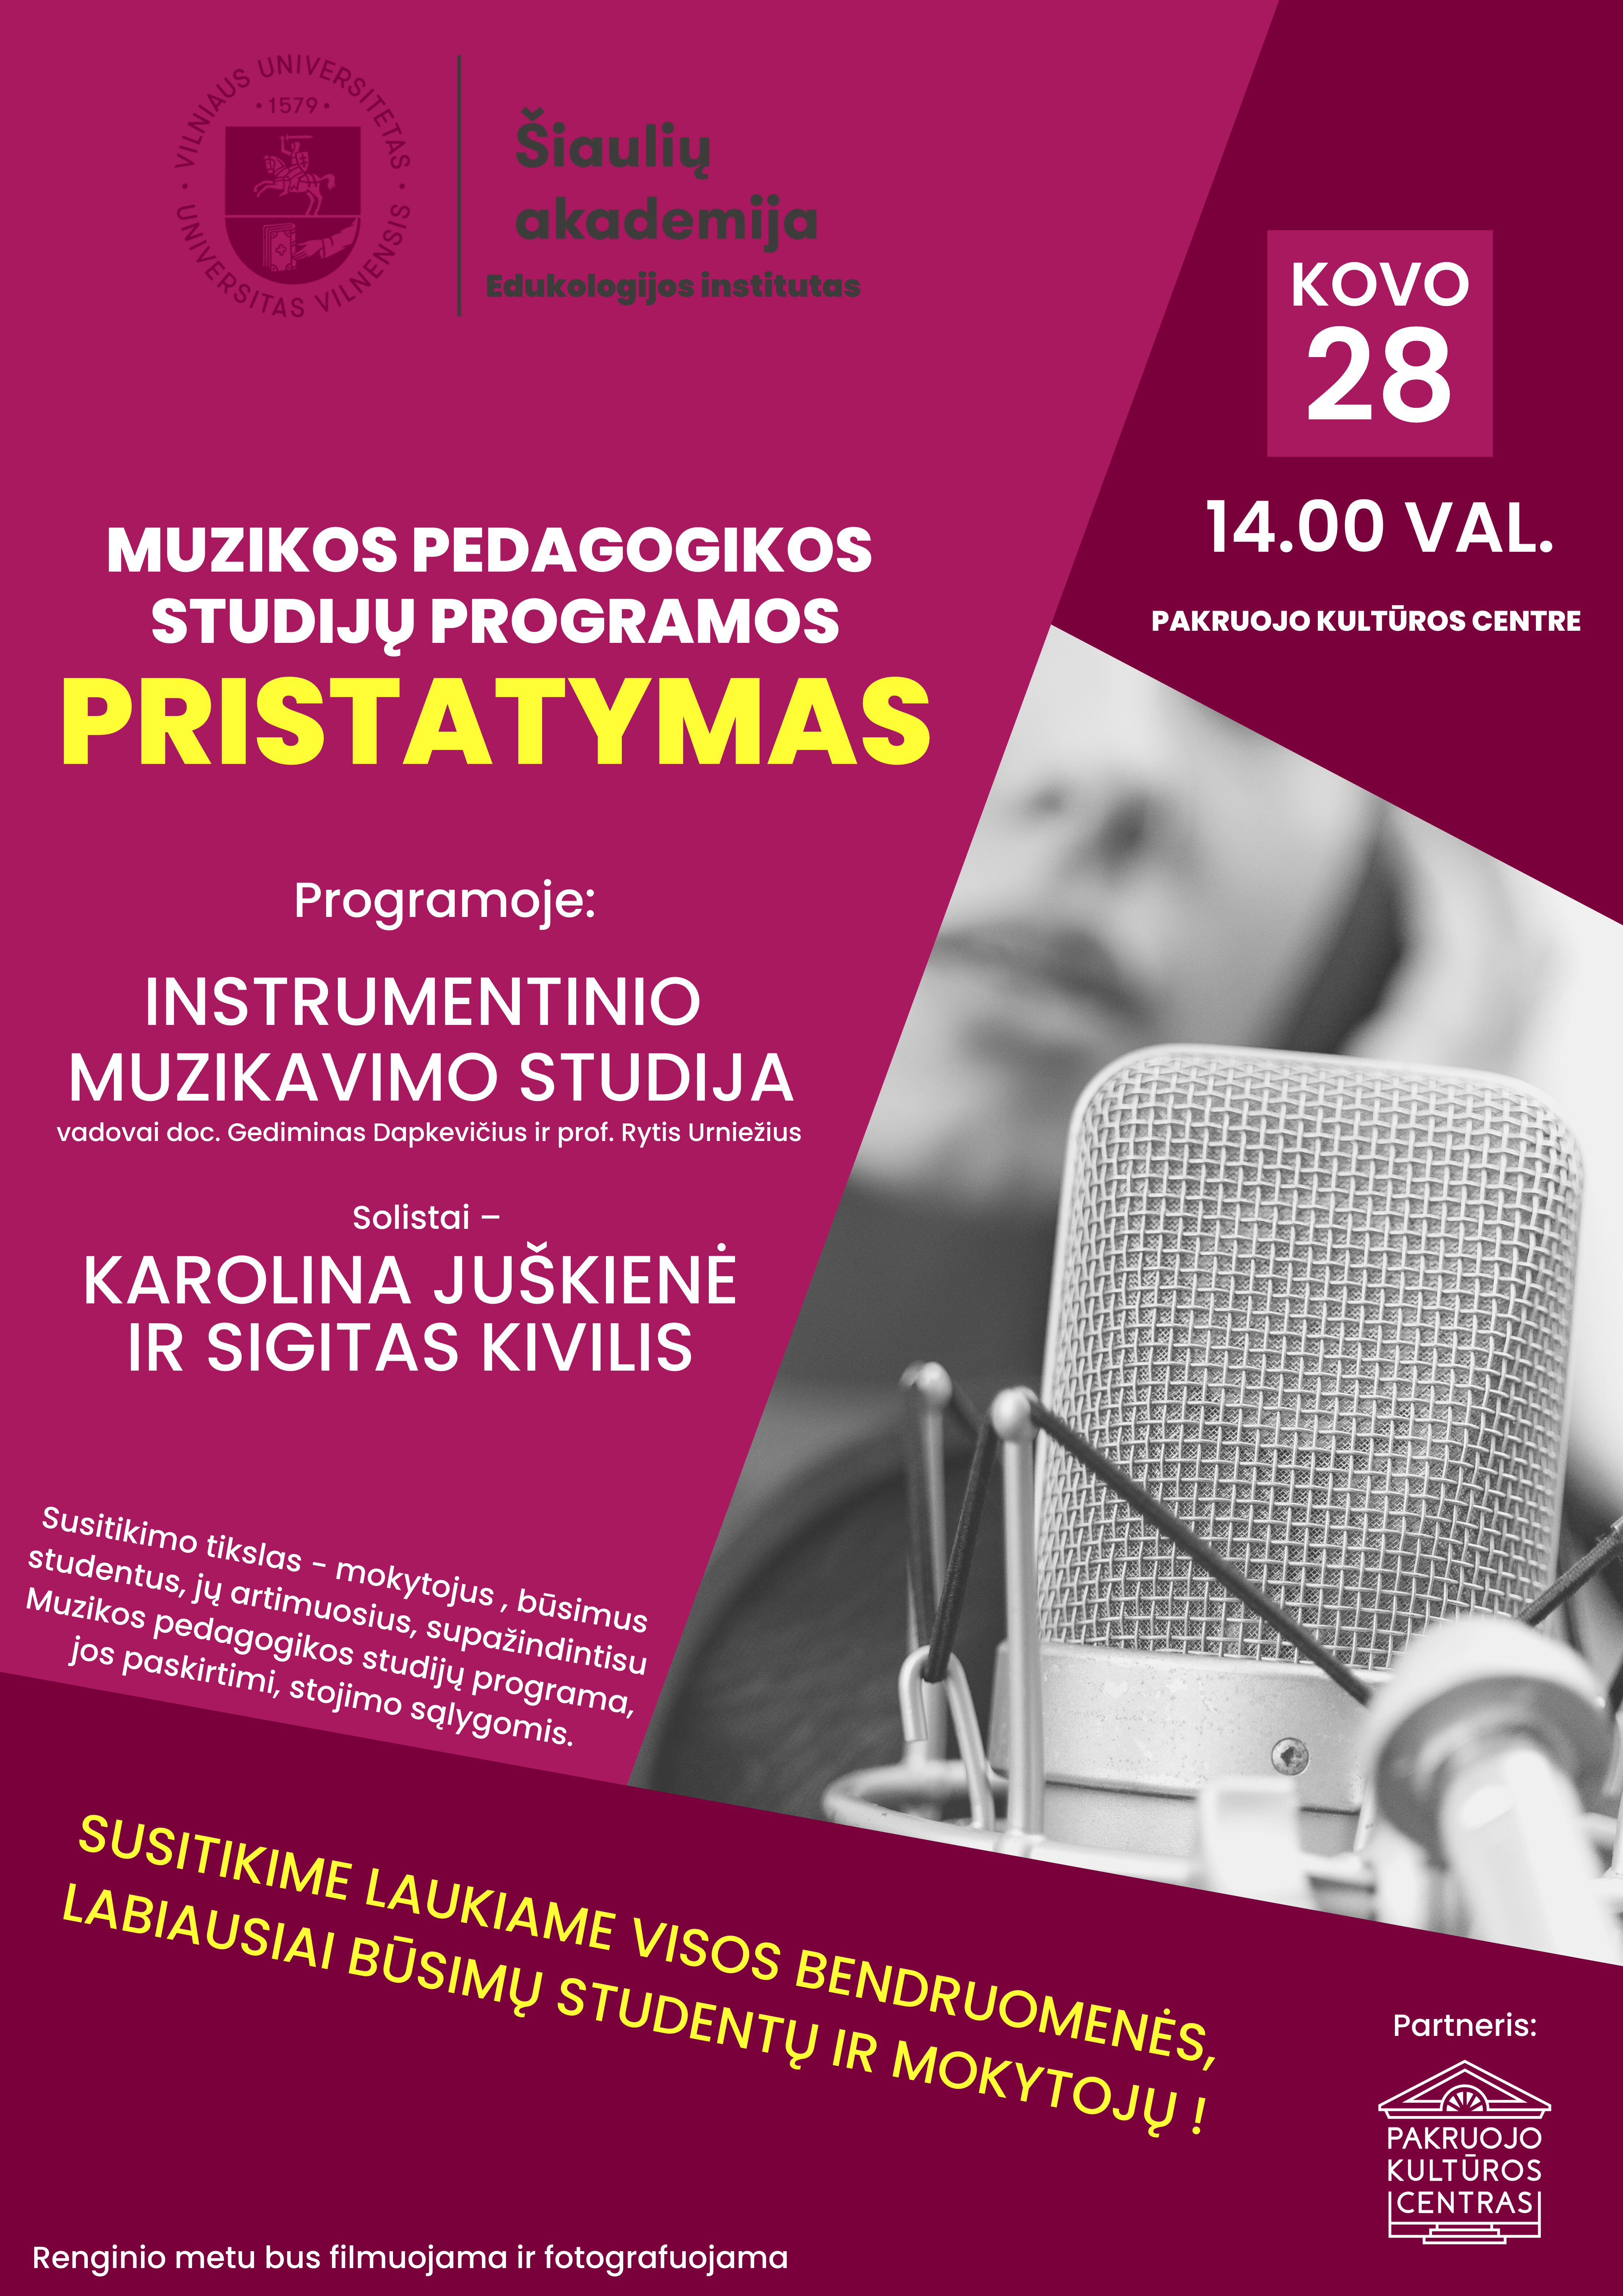 Kviečiame į VU Šiaulių akademijos muzikos pedagogikos studijų programos pristatymą!